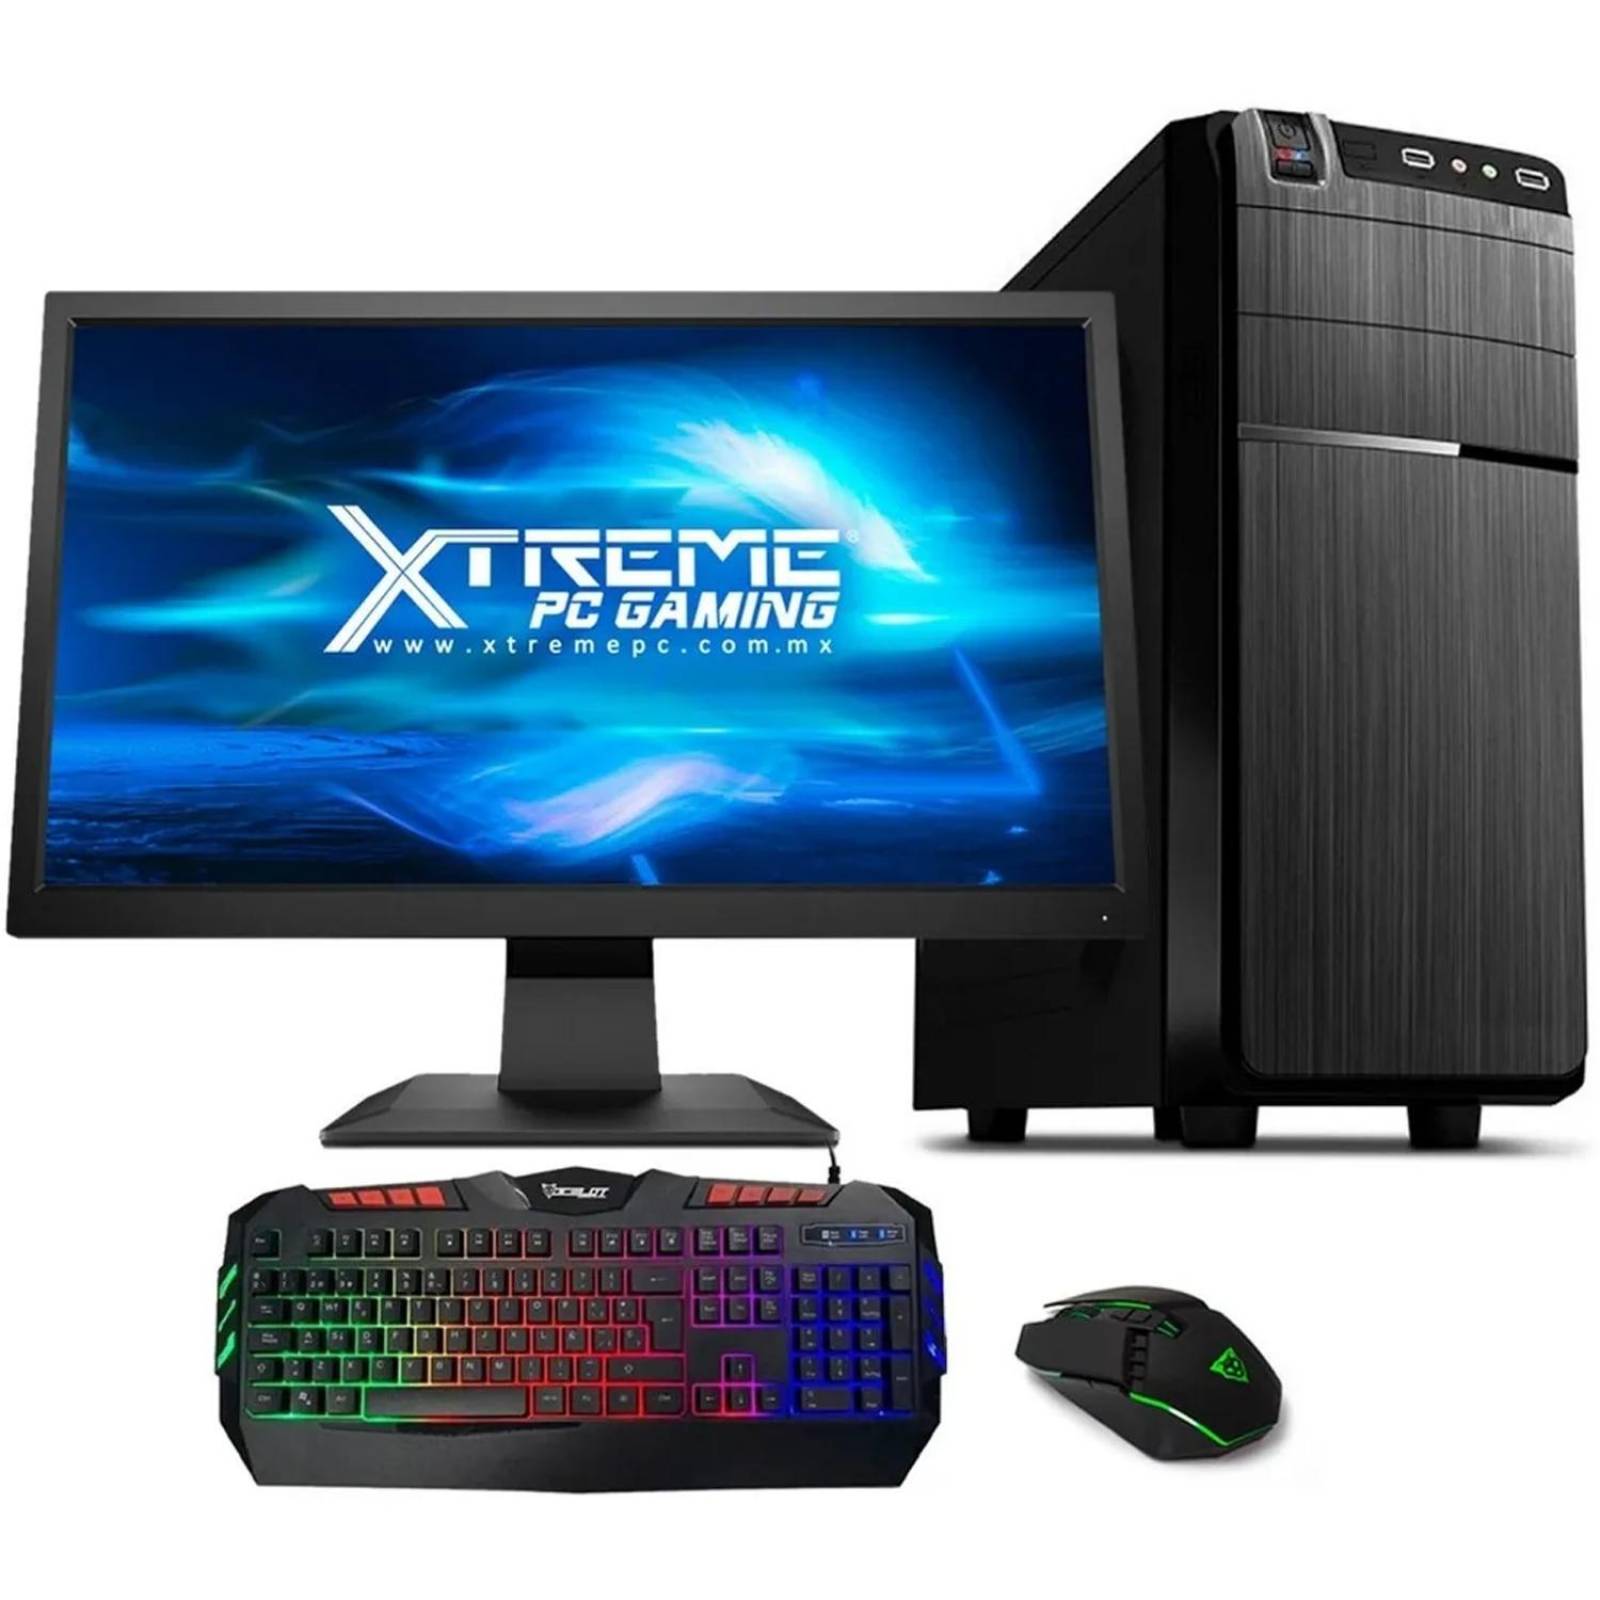 Xtreme Pc Gamer AMD Radeon R7 A8 9600 8GB 500GB Monitor 19.5 WIFI 